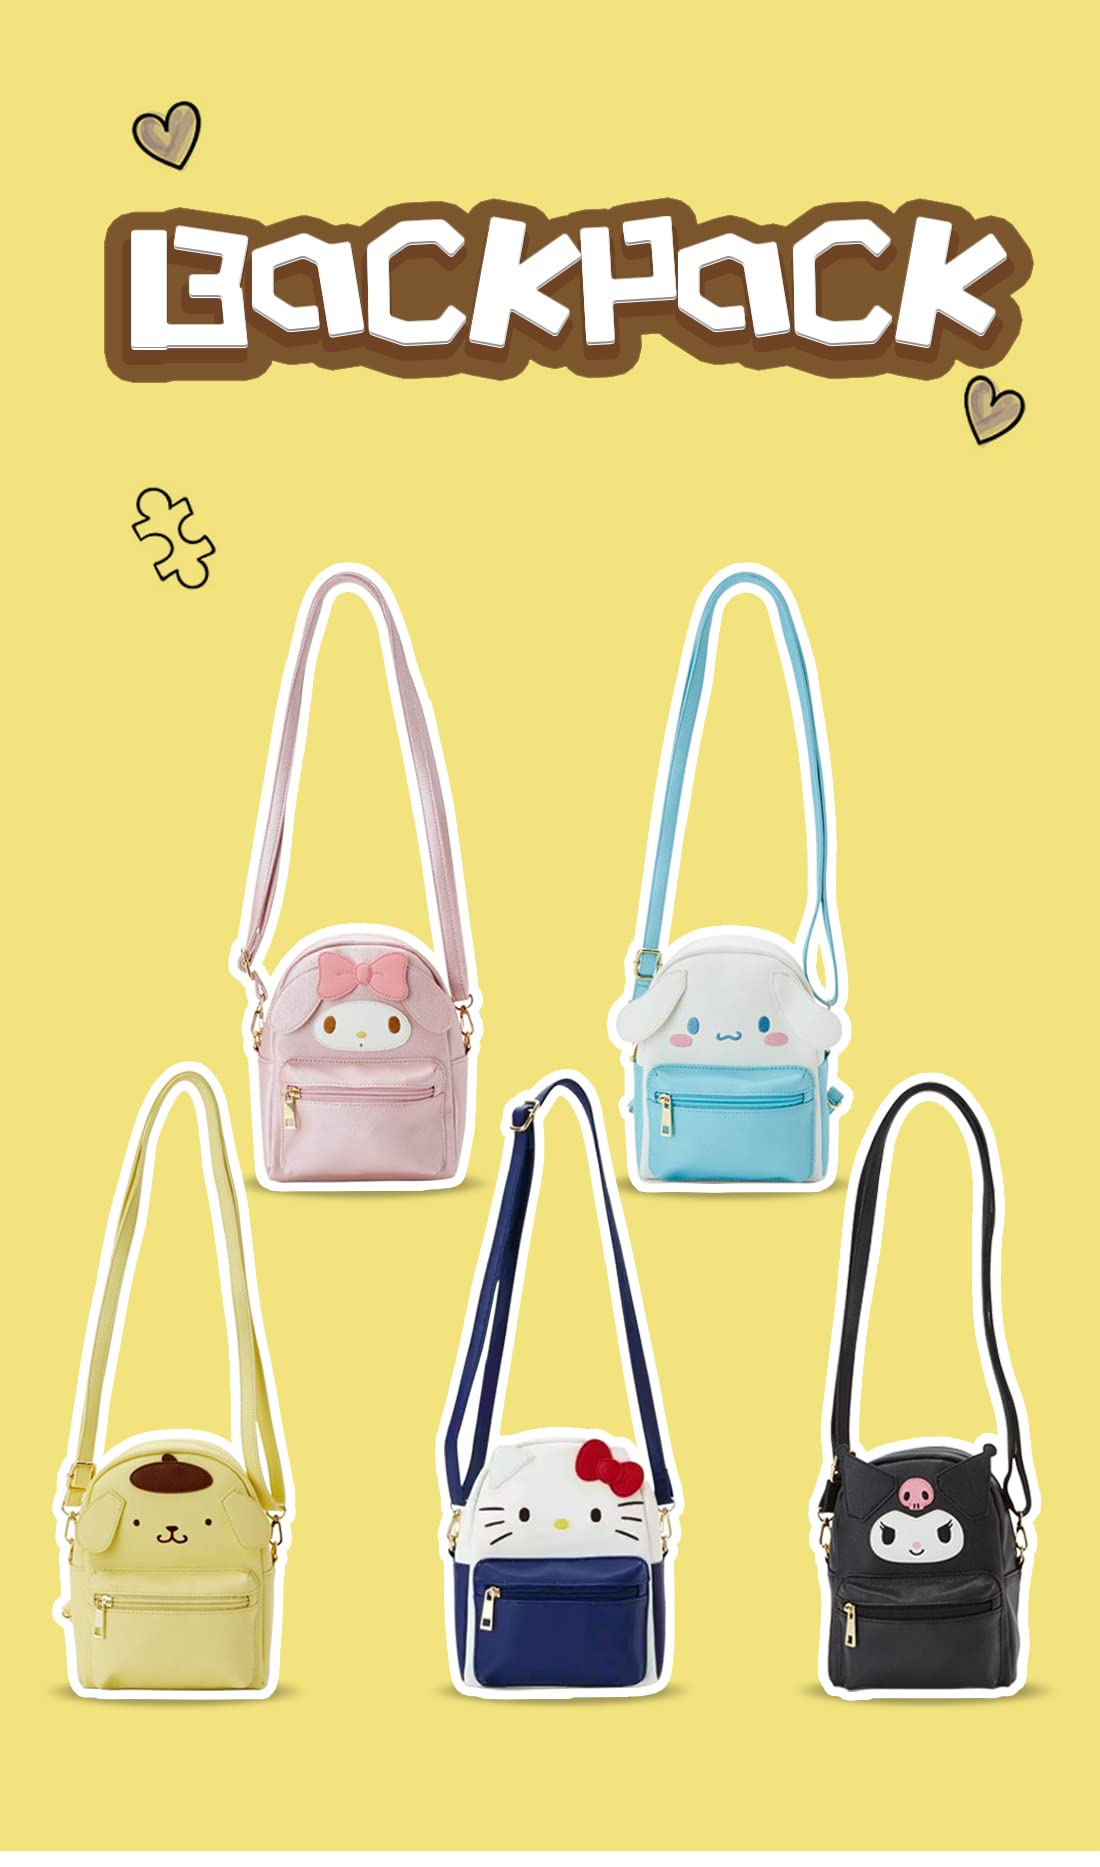 Girls Anime Kawaii Mini Backpack + Keychain Anime Cosplay Backpack Cute Doll Handbag Shoulder Bag(Blue)